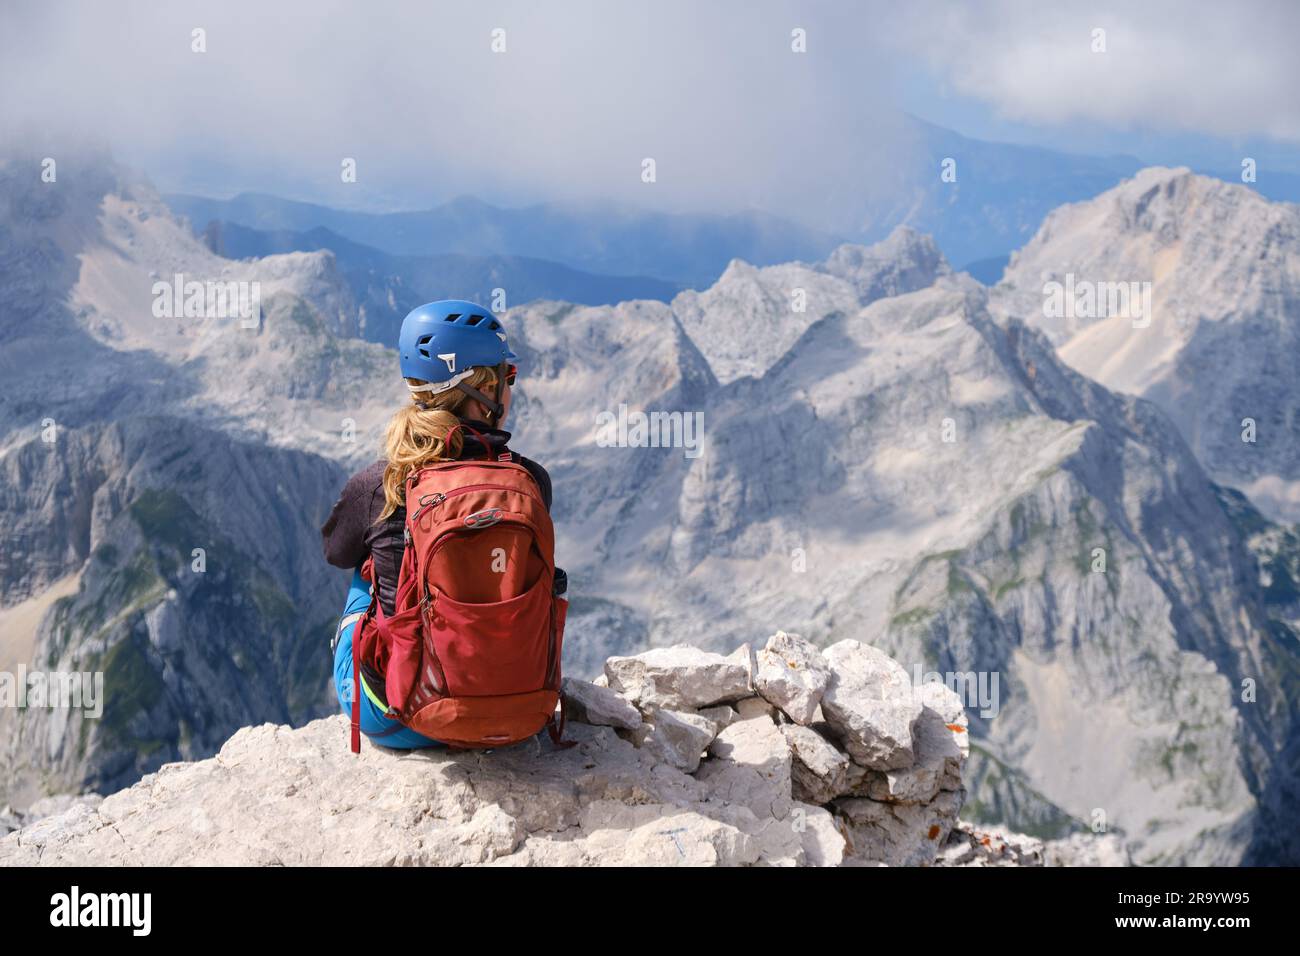 Donna alpina siede ai margini di una roccia nelle montagne del Triglav, in Slovenia, in una luminosa giornata estiva. Copia spazio, avventura, attivo, vertice, obiettivo, attività Foto Stock